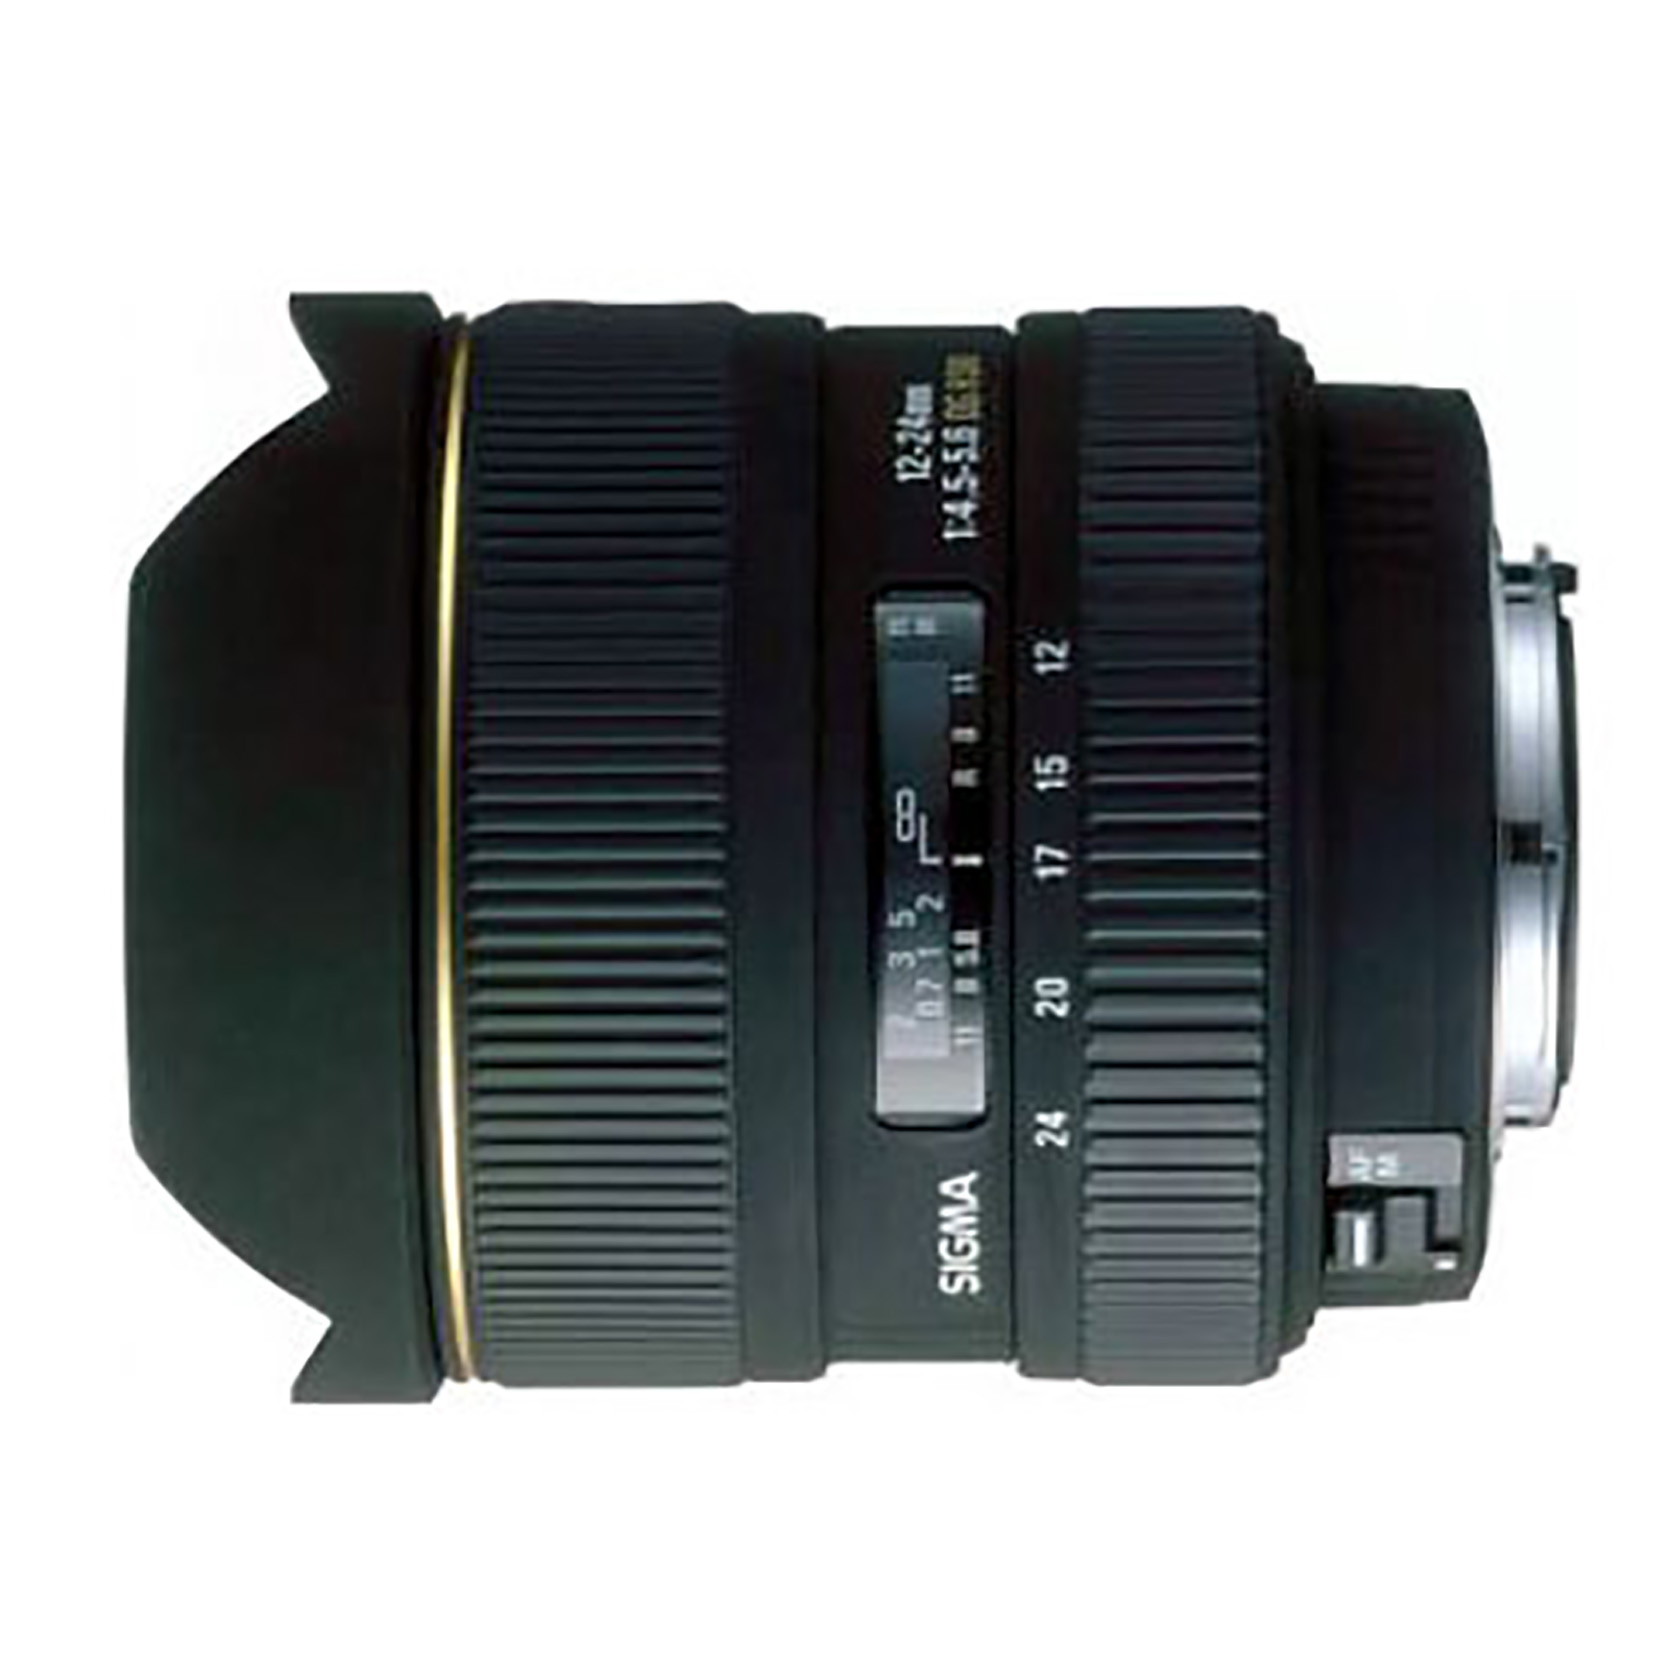 Sigma 24 ex dg. Sigma 12-24 Canon. Sigma 12-24mm f/4.5-5.6 ex DG HSM. Объектив Sigma af 12-24mm f/4.5-5.6 DG HSM II. Nikon Sigma af 12-24mm f/4.5-5.6.